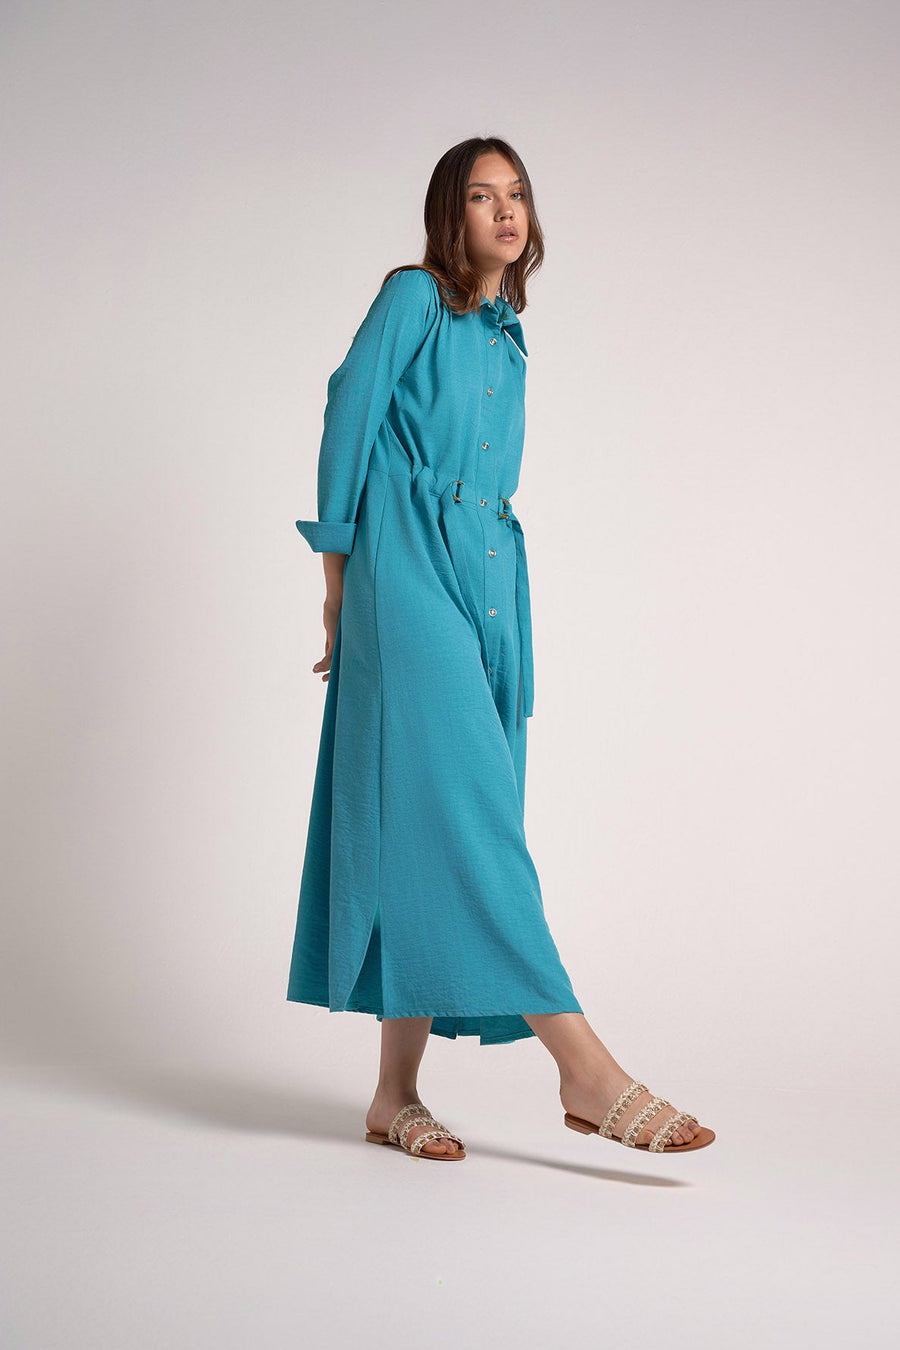 Turquoise shirt dress belt within - nahlaelalfydesigns